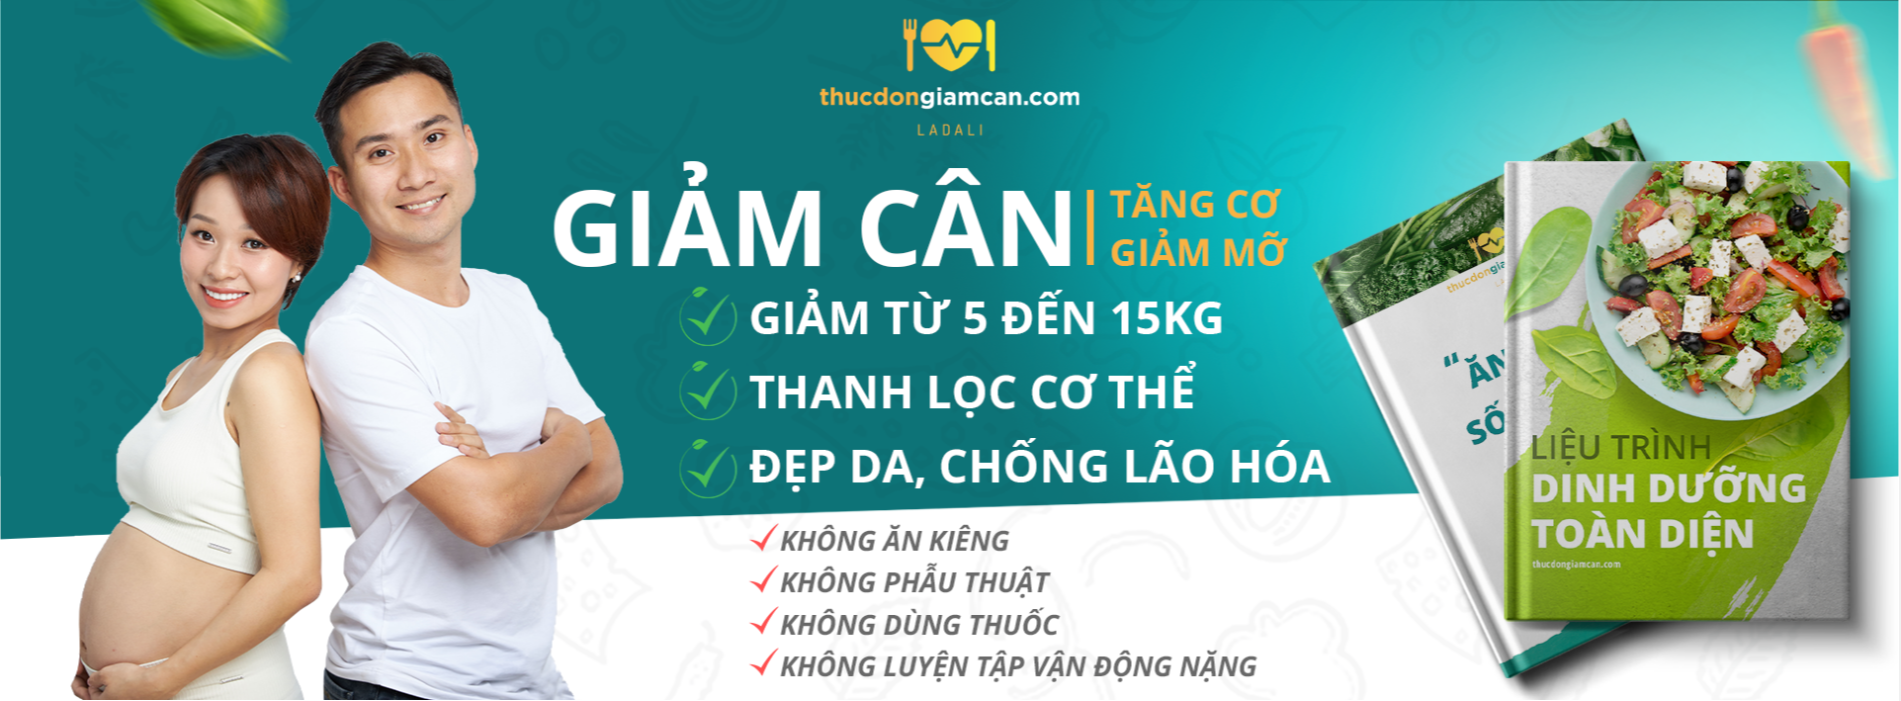 Hình ảnh Thực đơn giảm cân Ladali - Trung tâm chăm sóc sức khỏe cộng đồng uy tín hàng đầu Việt Nam